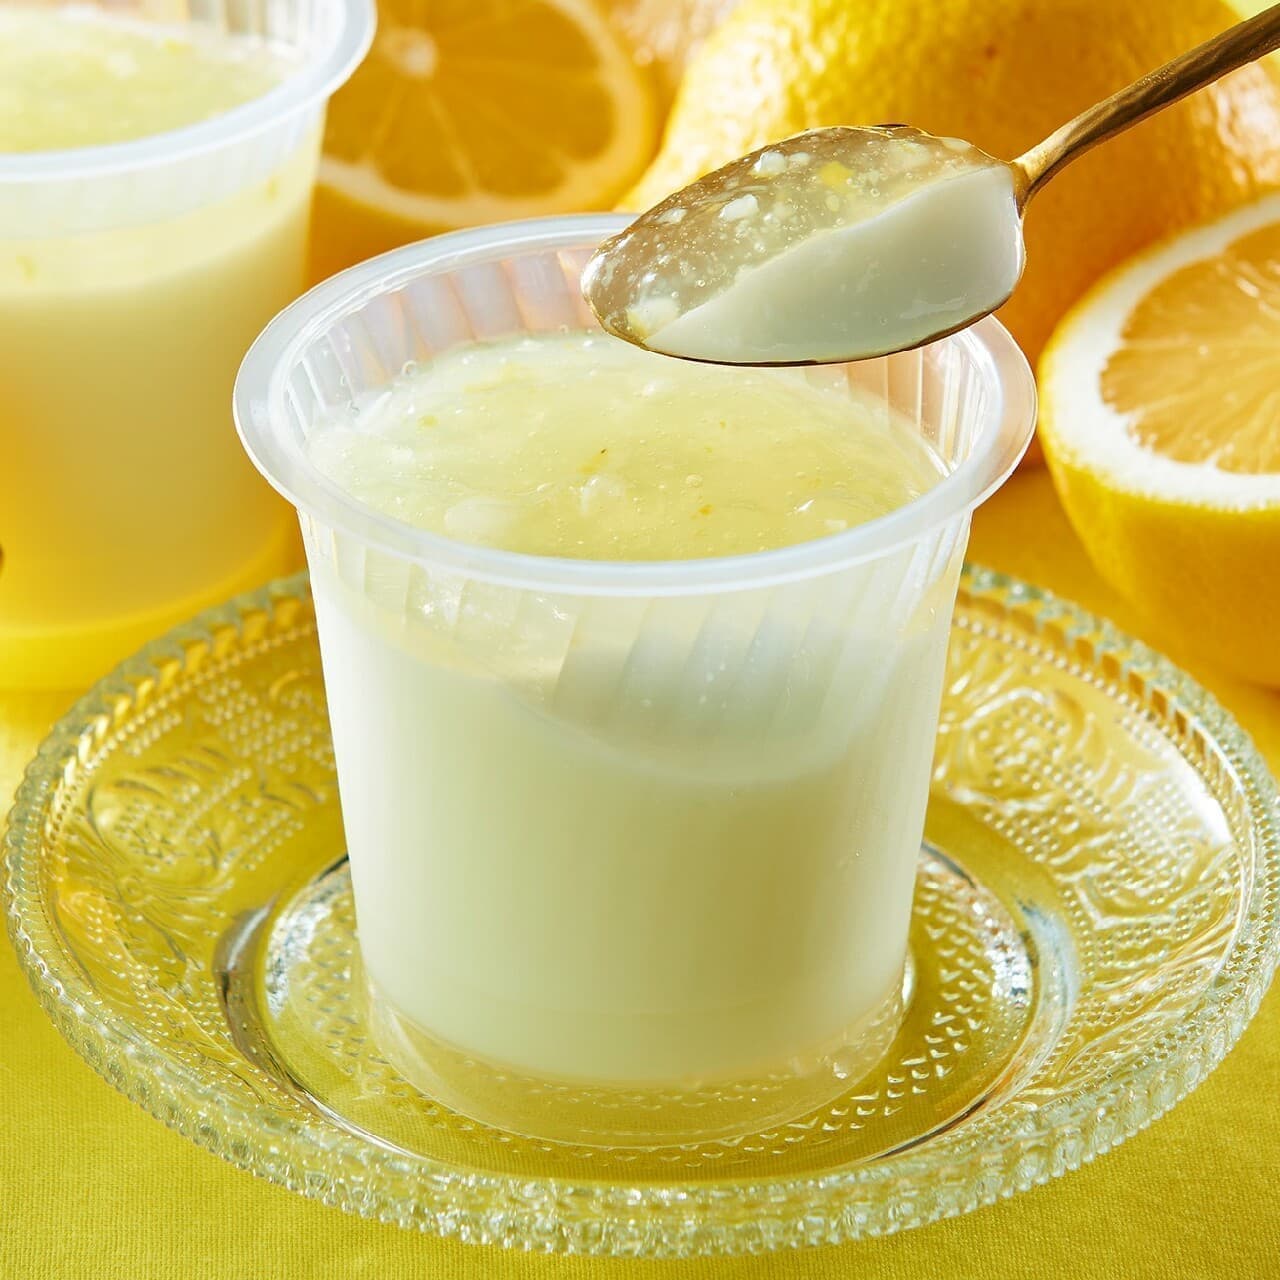 Shateraise "Setouchi Lemon Milk Pudding